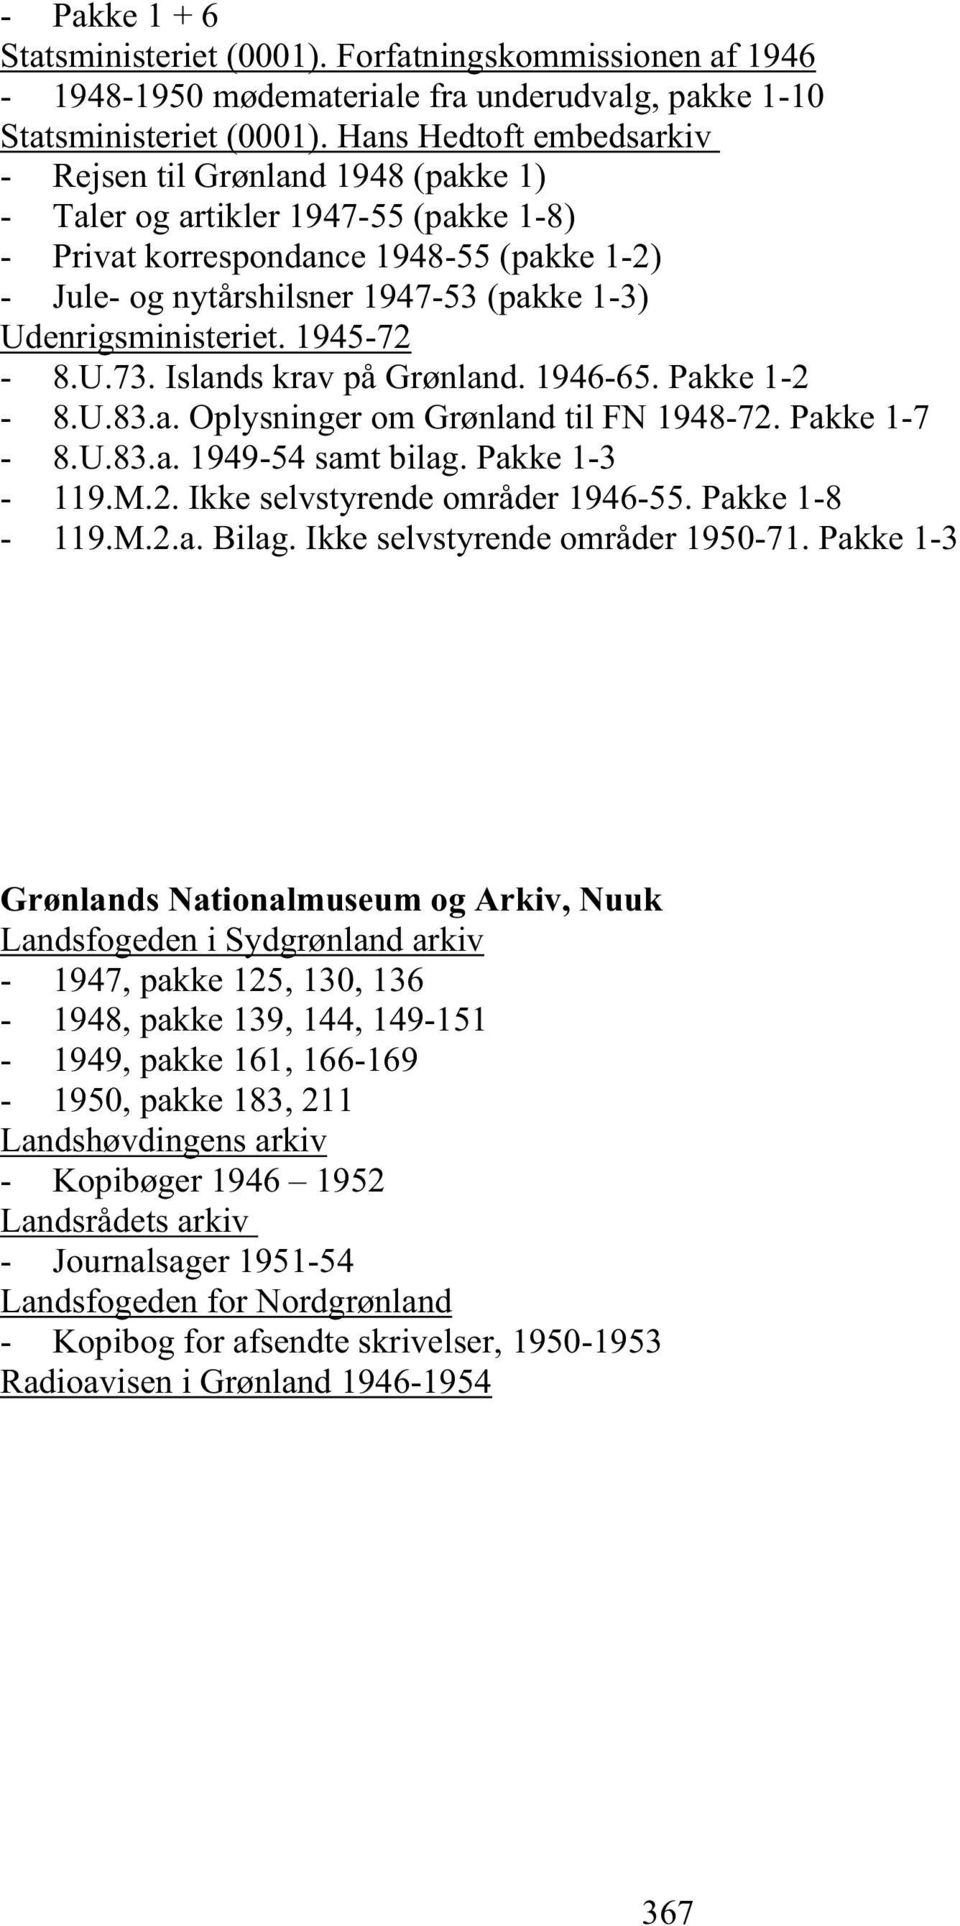 Udenrigsministeriet. 1945-72 - 8.U.73. Islands krav på Grønland. 1946-65. Pakke 1-2 - 8.U.83.a. Oplysninger om Grønland til FN 1948-72. Pakke 1-7 - 8.U.83.a. 1949-54 samt bilag. Pakke 1-3 - 119.M.2. Ikke selvstyrende områder 1946-55.